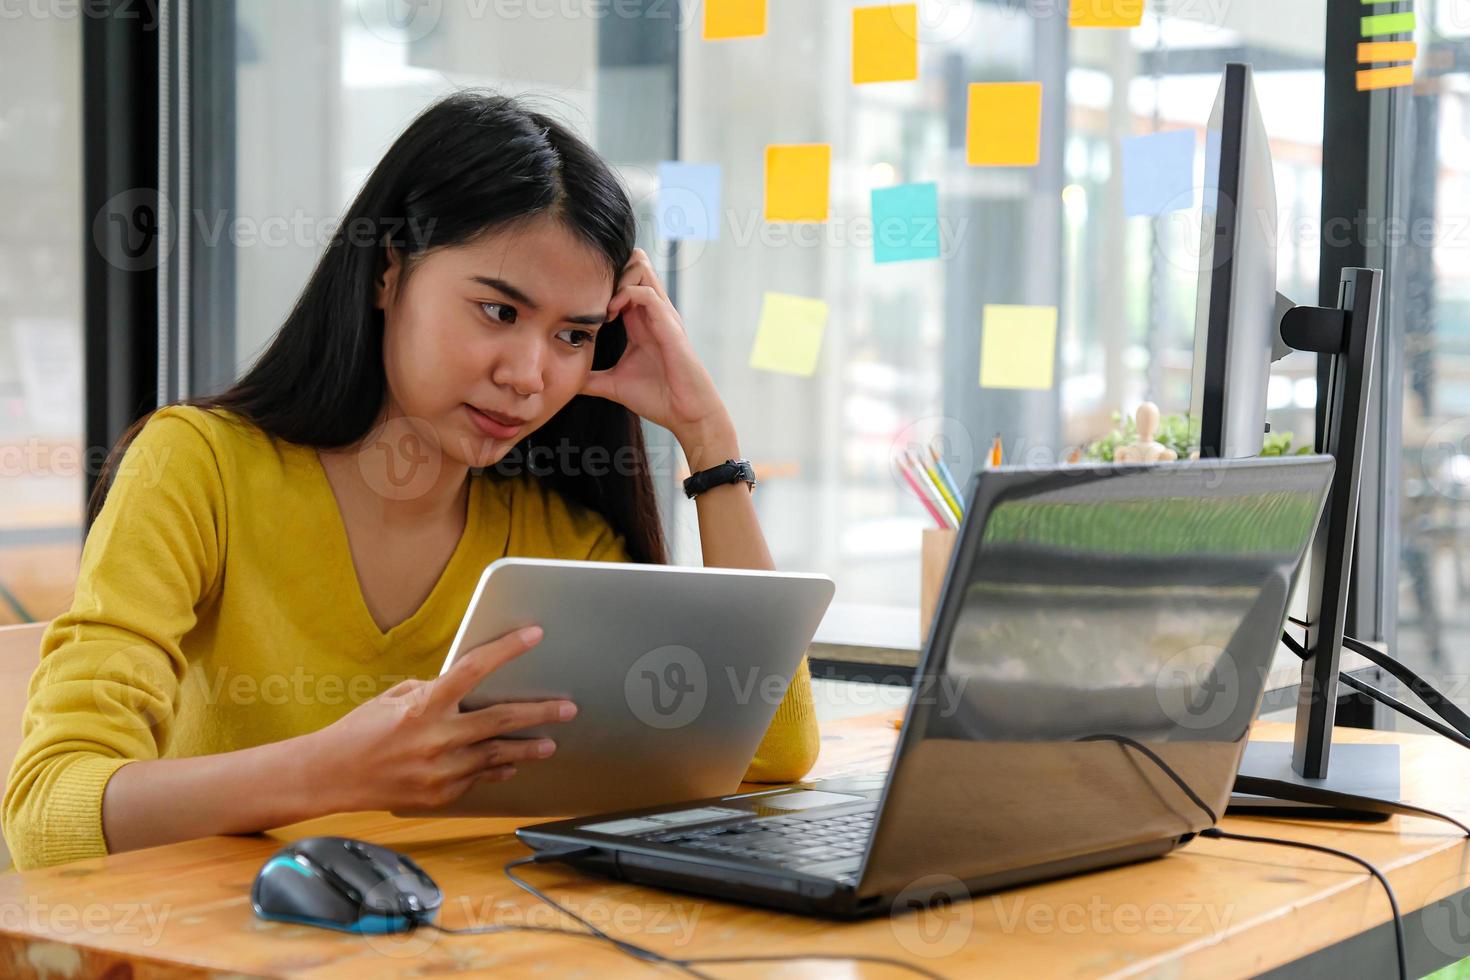 aziatische vrouwelijke programmeur draagt gele shirts, kijkt naar het laptopscherm en houdt een tablet vast. ze toonde een serieuze manier. foto